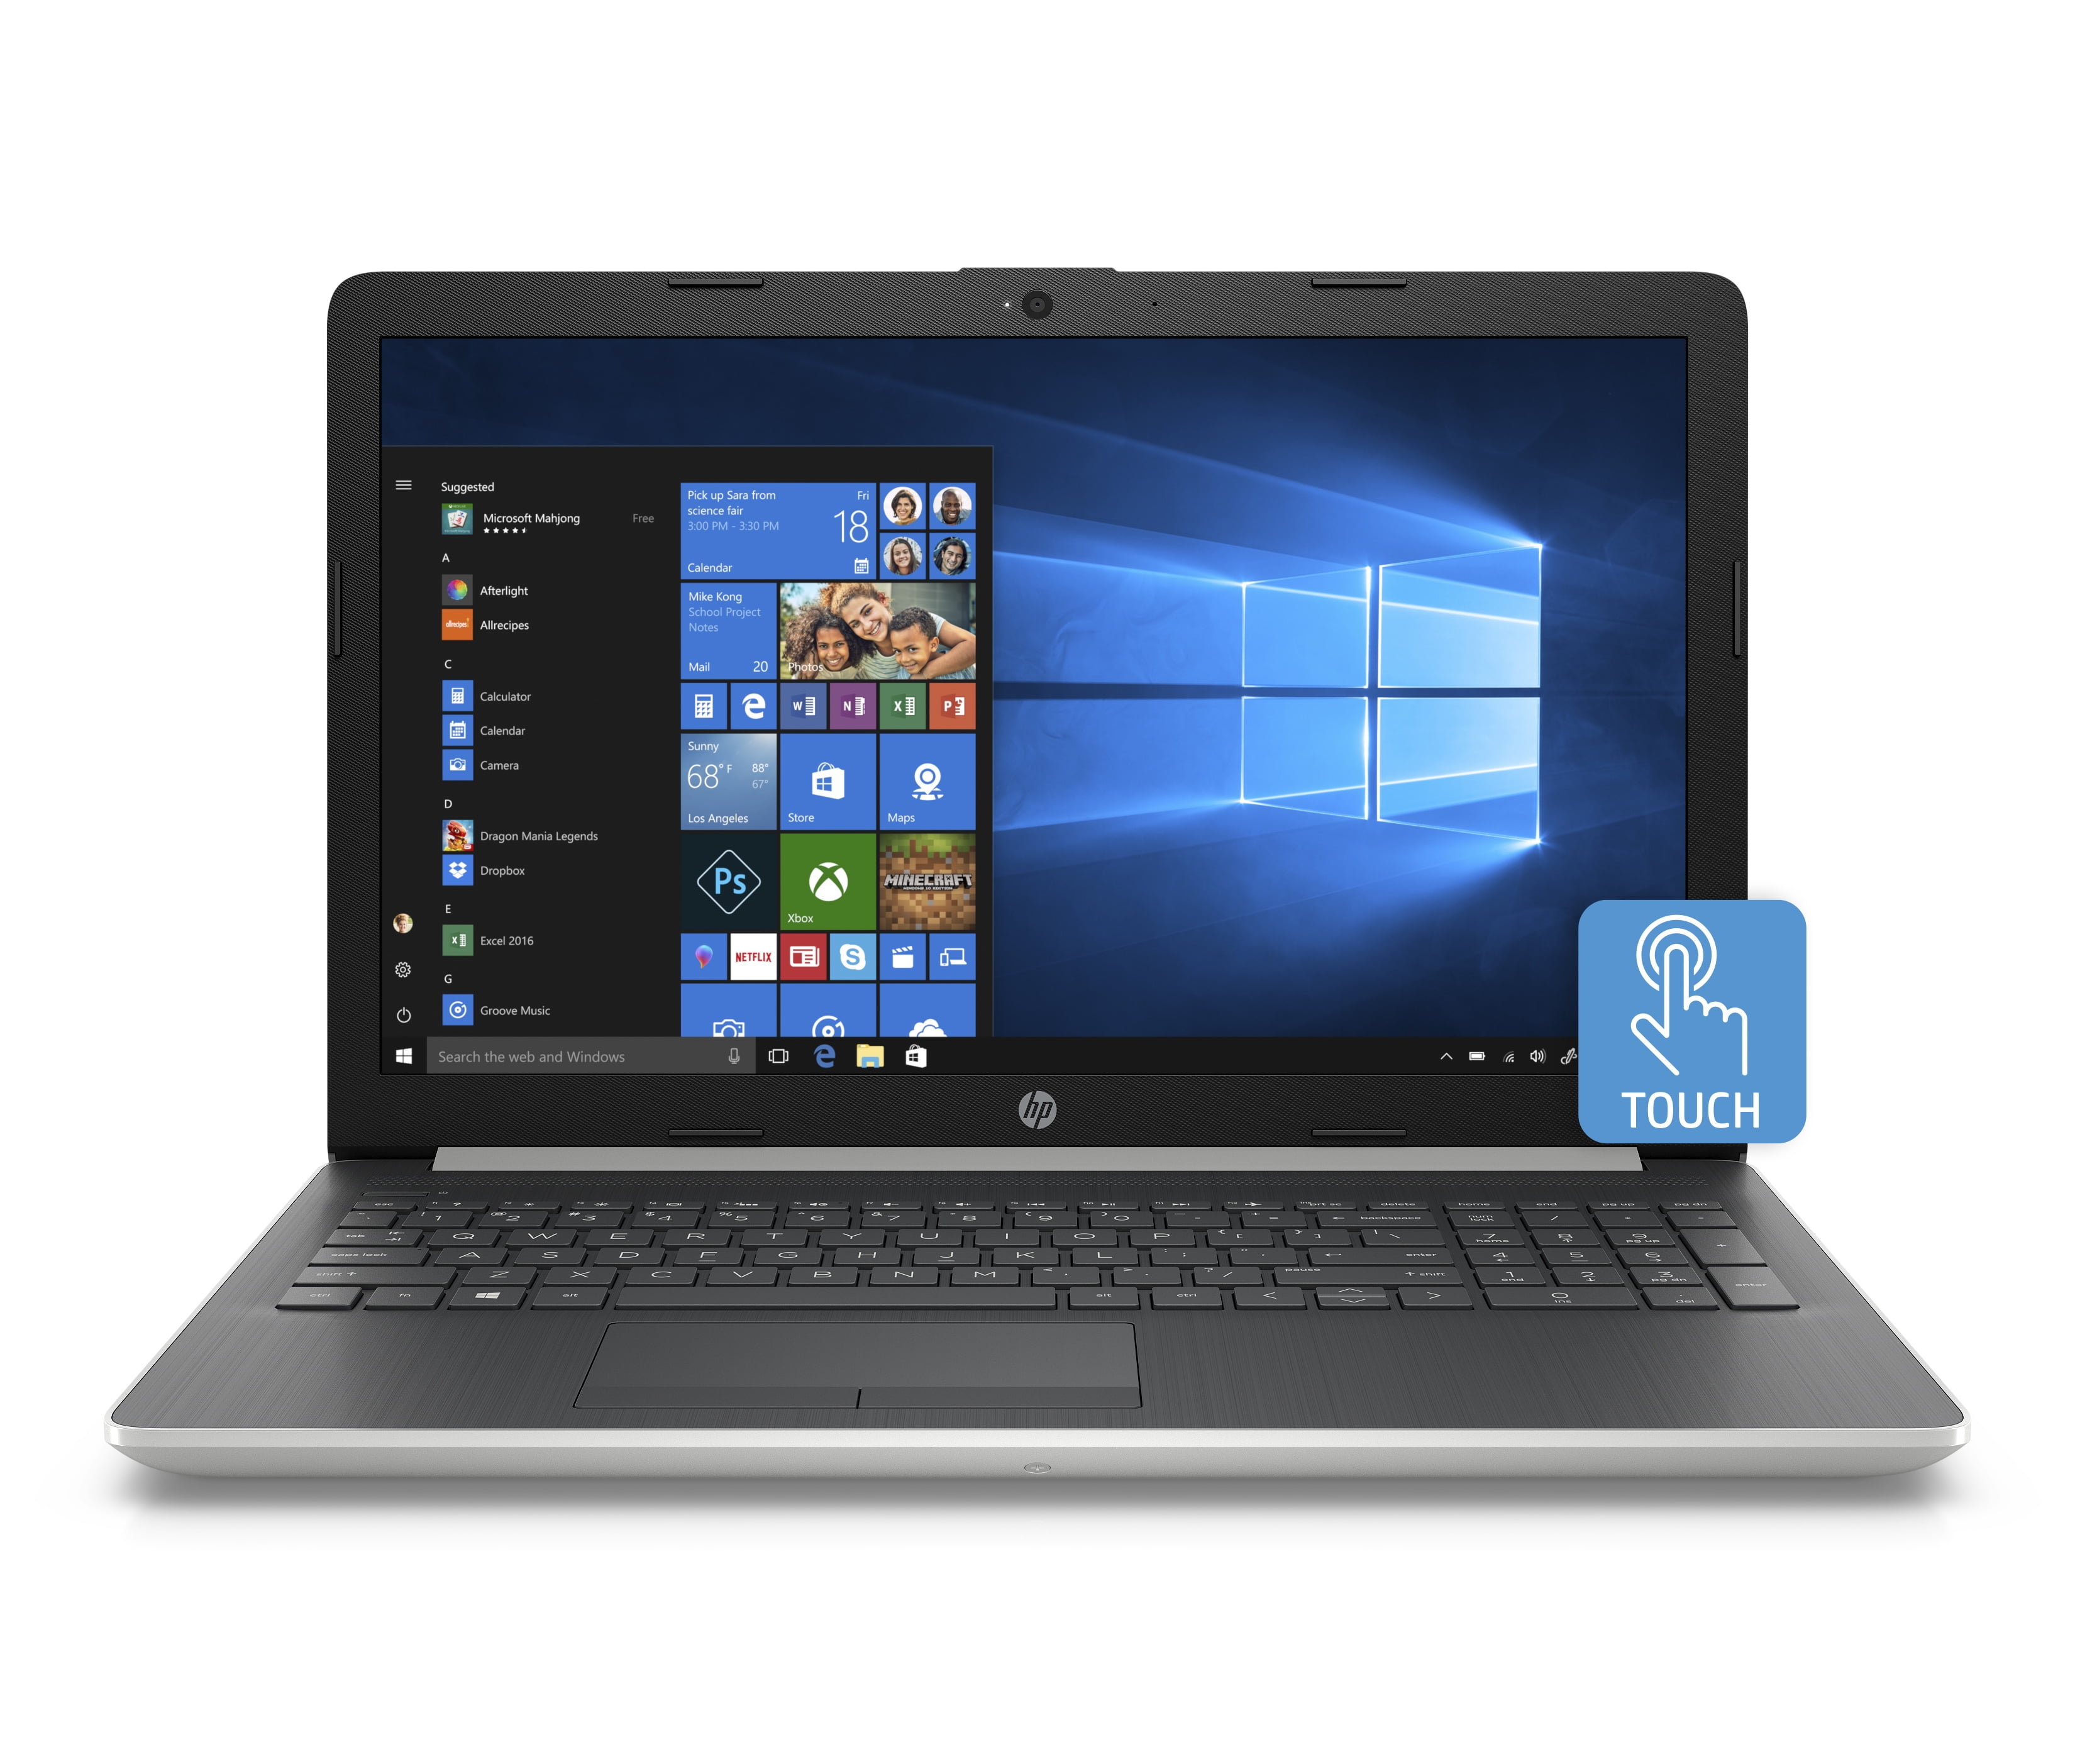 New HP Compaq EliteBook 8540w 8540p Quad Core Motherboard 595765-001